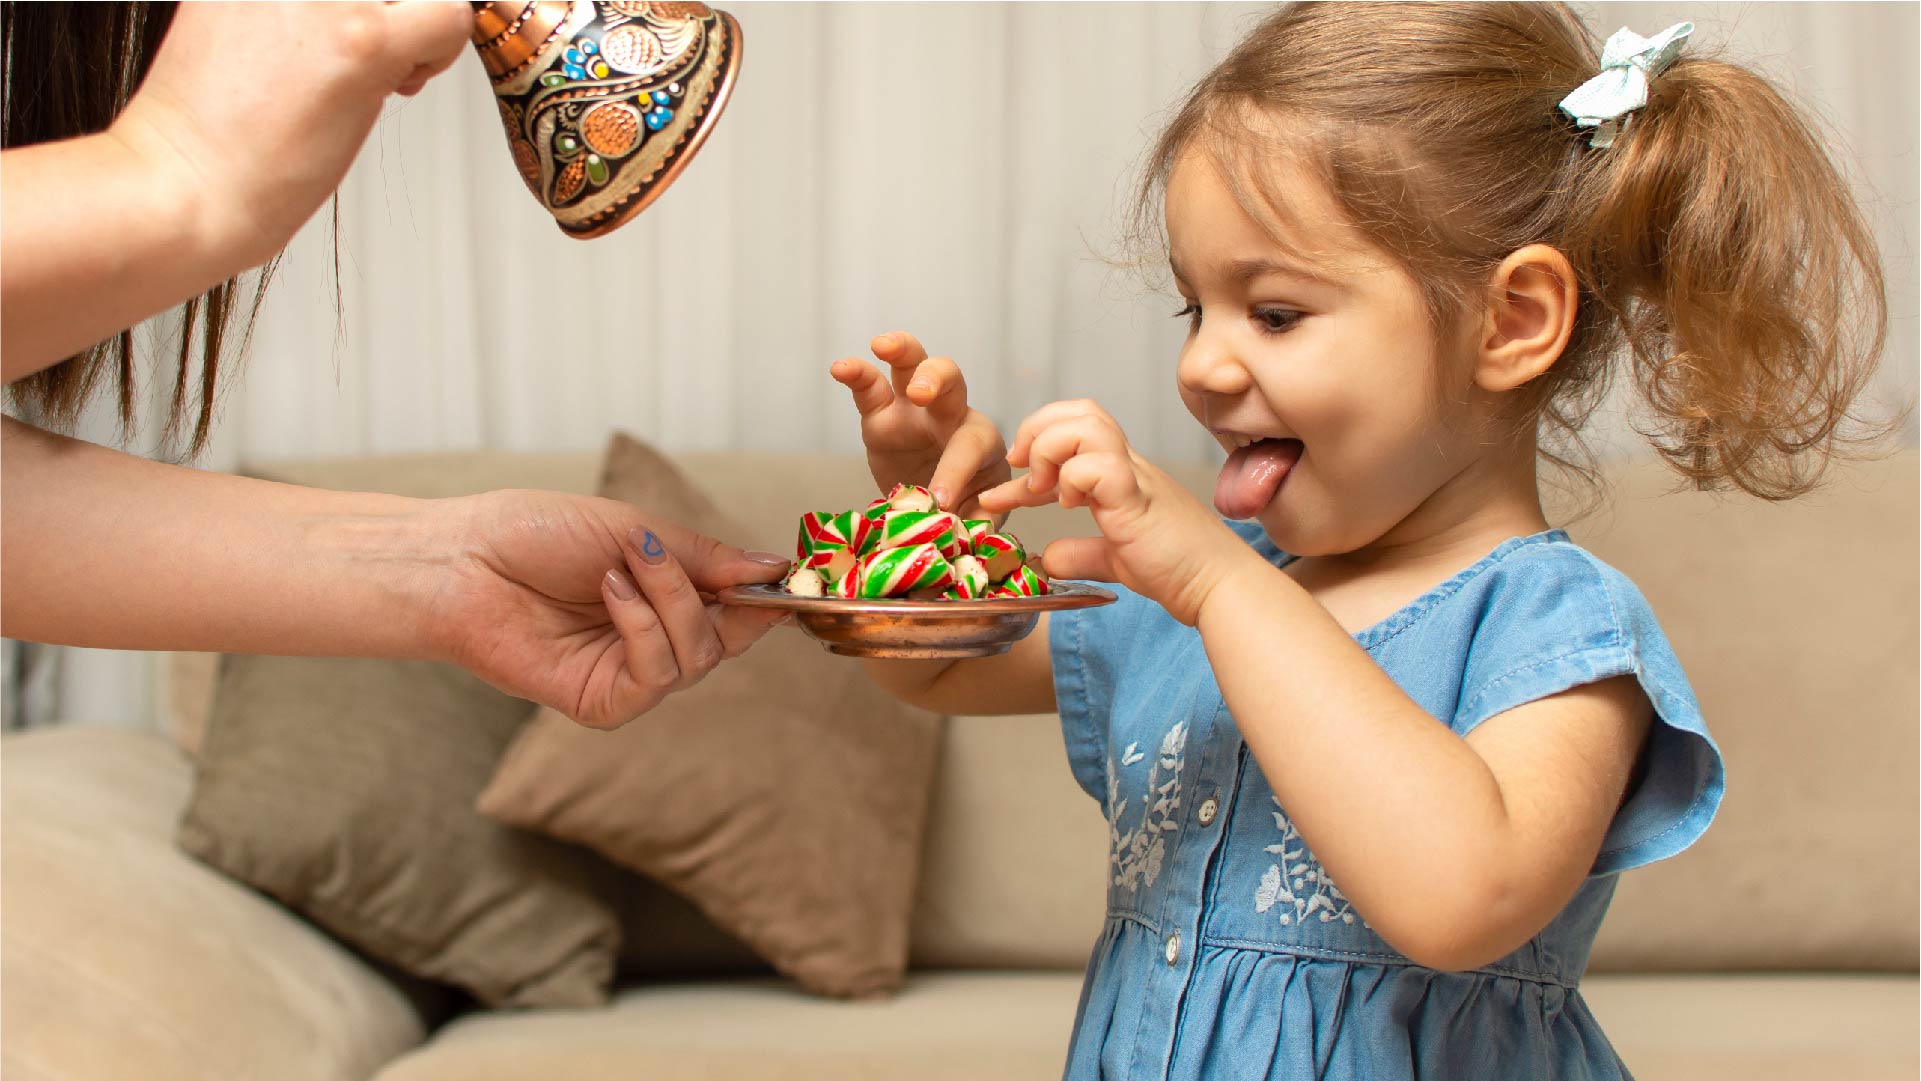 Een klein meisje eet een snoepje